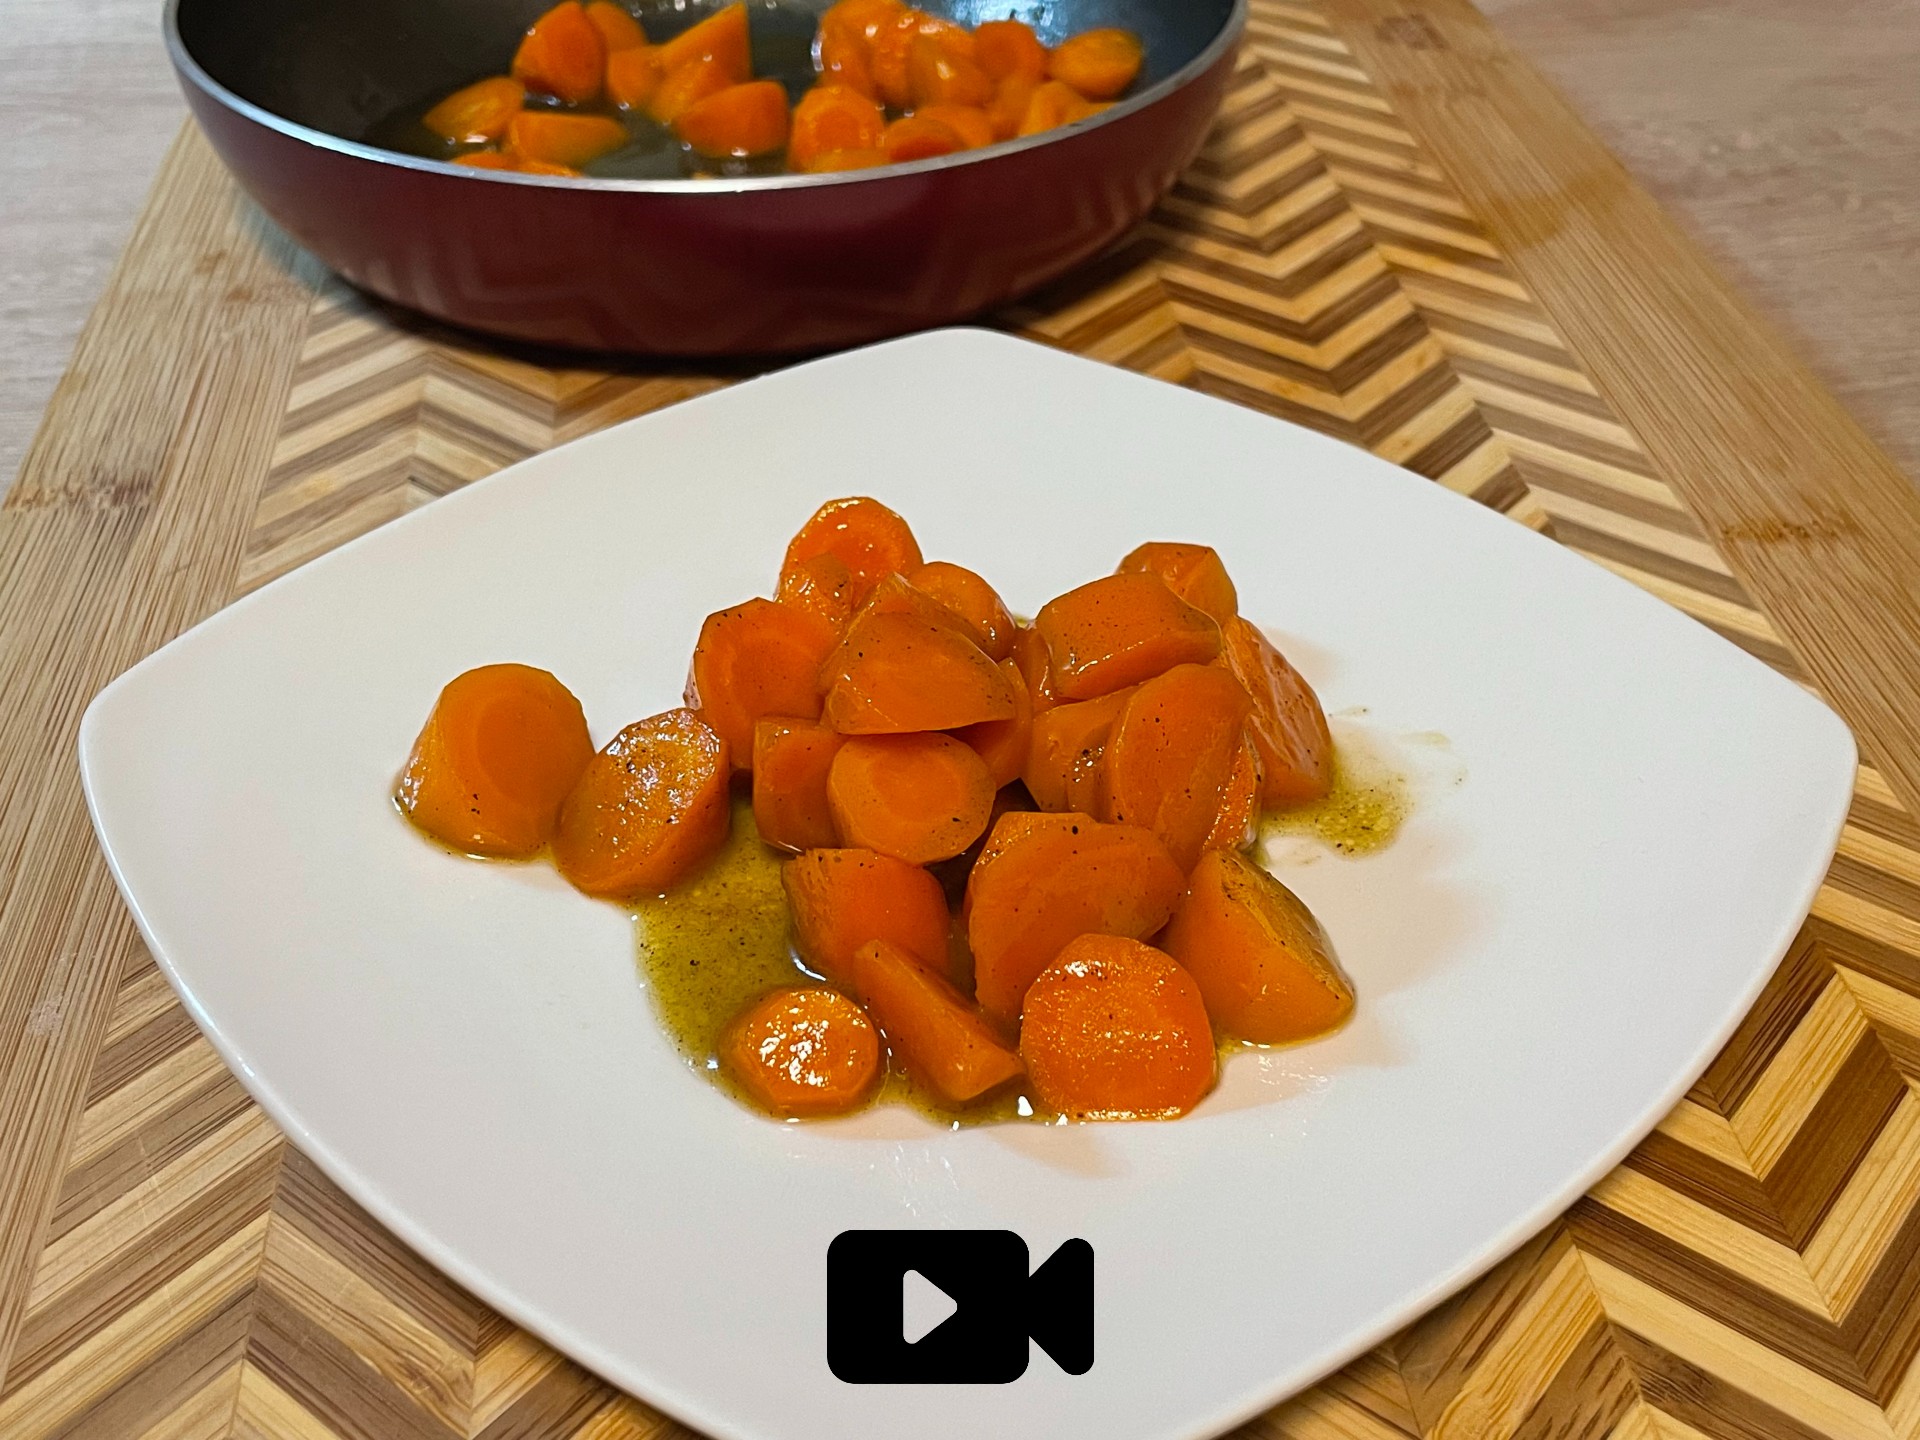 Συνταγή για υπέροχα καρότα γλασέ. Είναι τραγανά και τρυφερά ταυτόχρονα και τα φτιάχνουμε σε λίγα μόνο λεπτά.